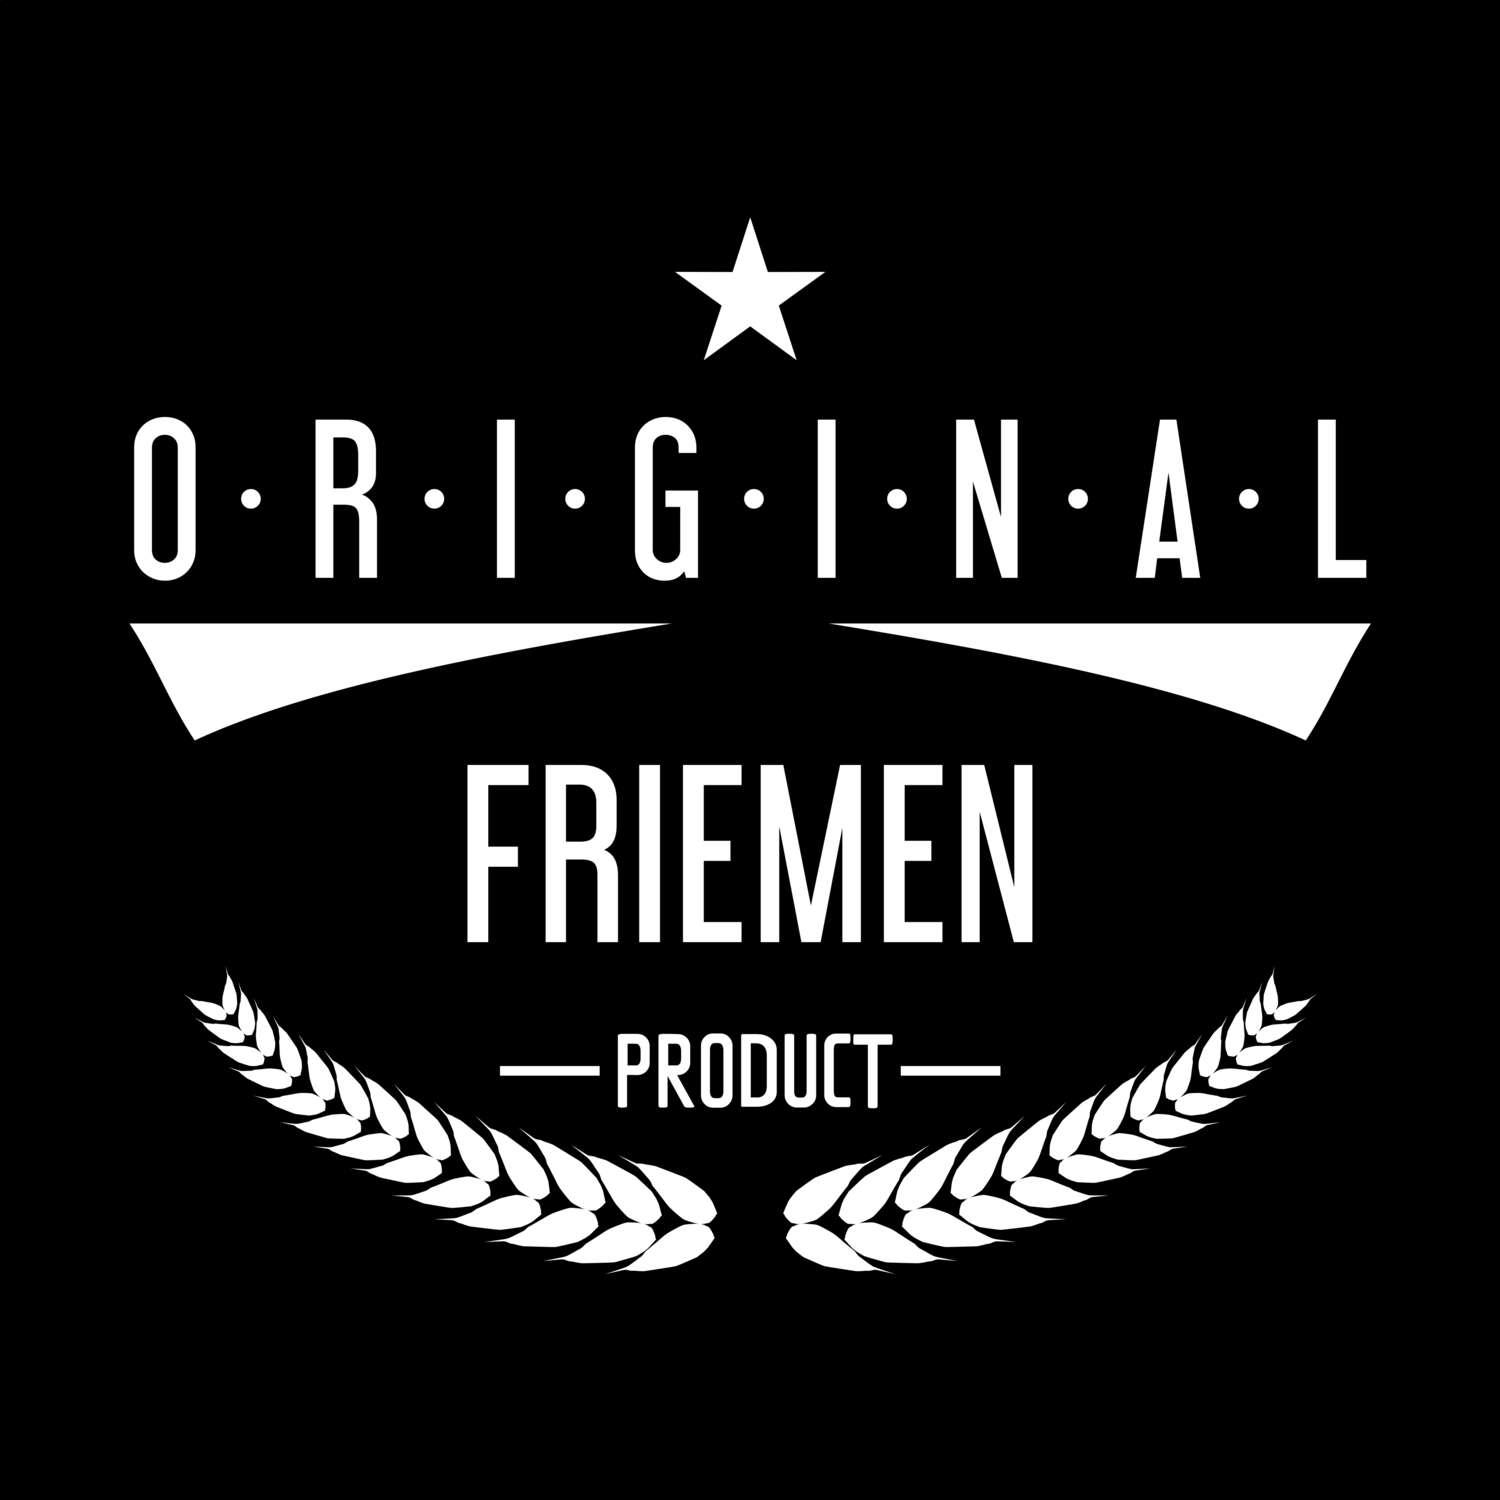 Friemen T-Shirt »Original Product«